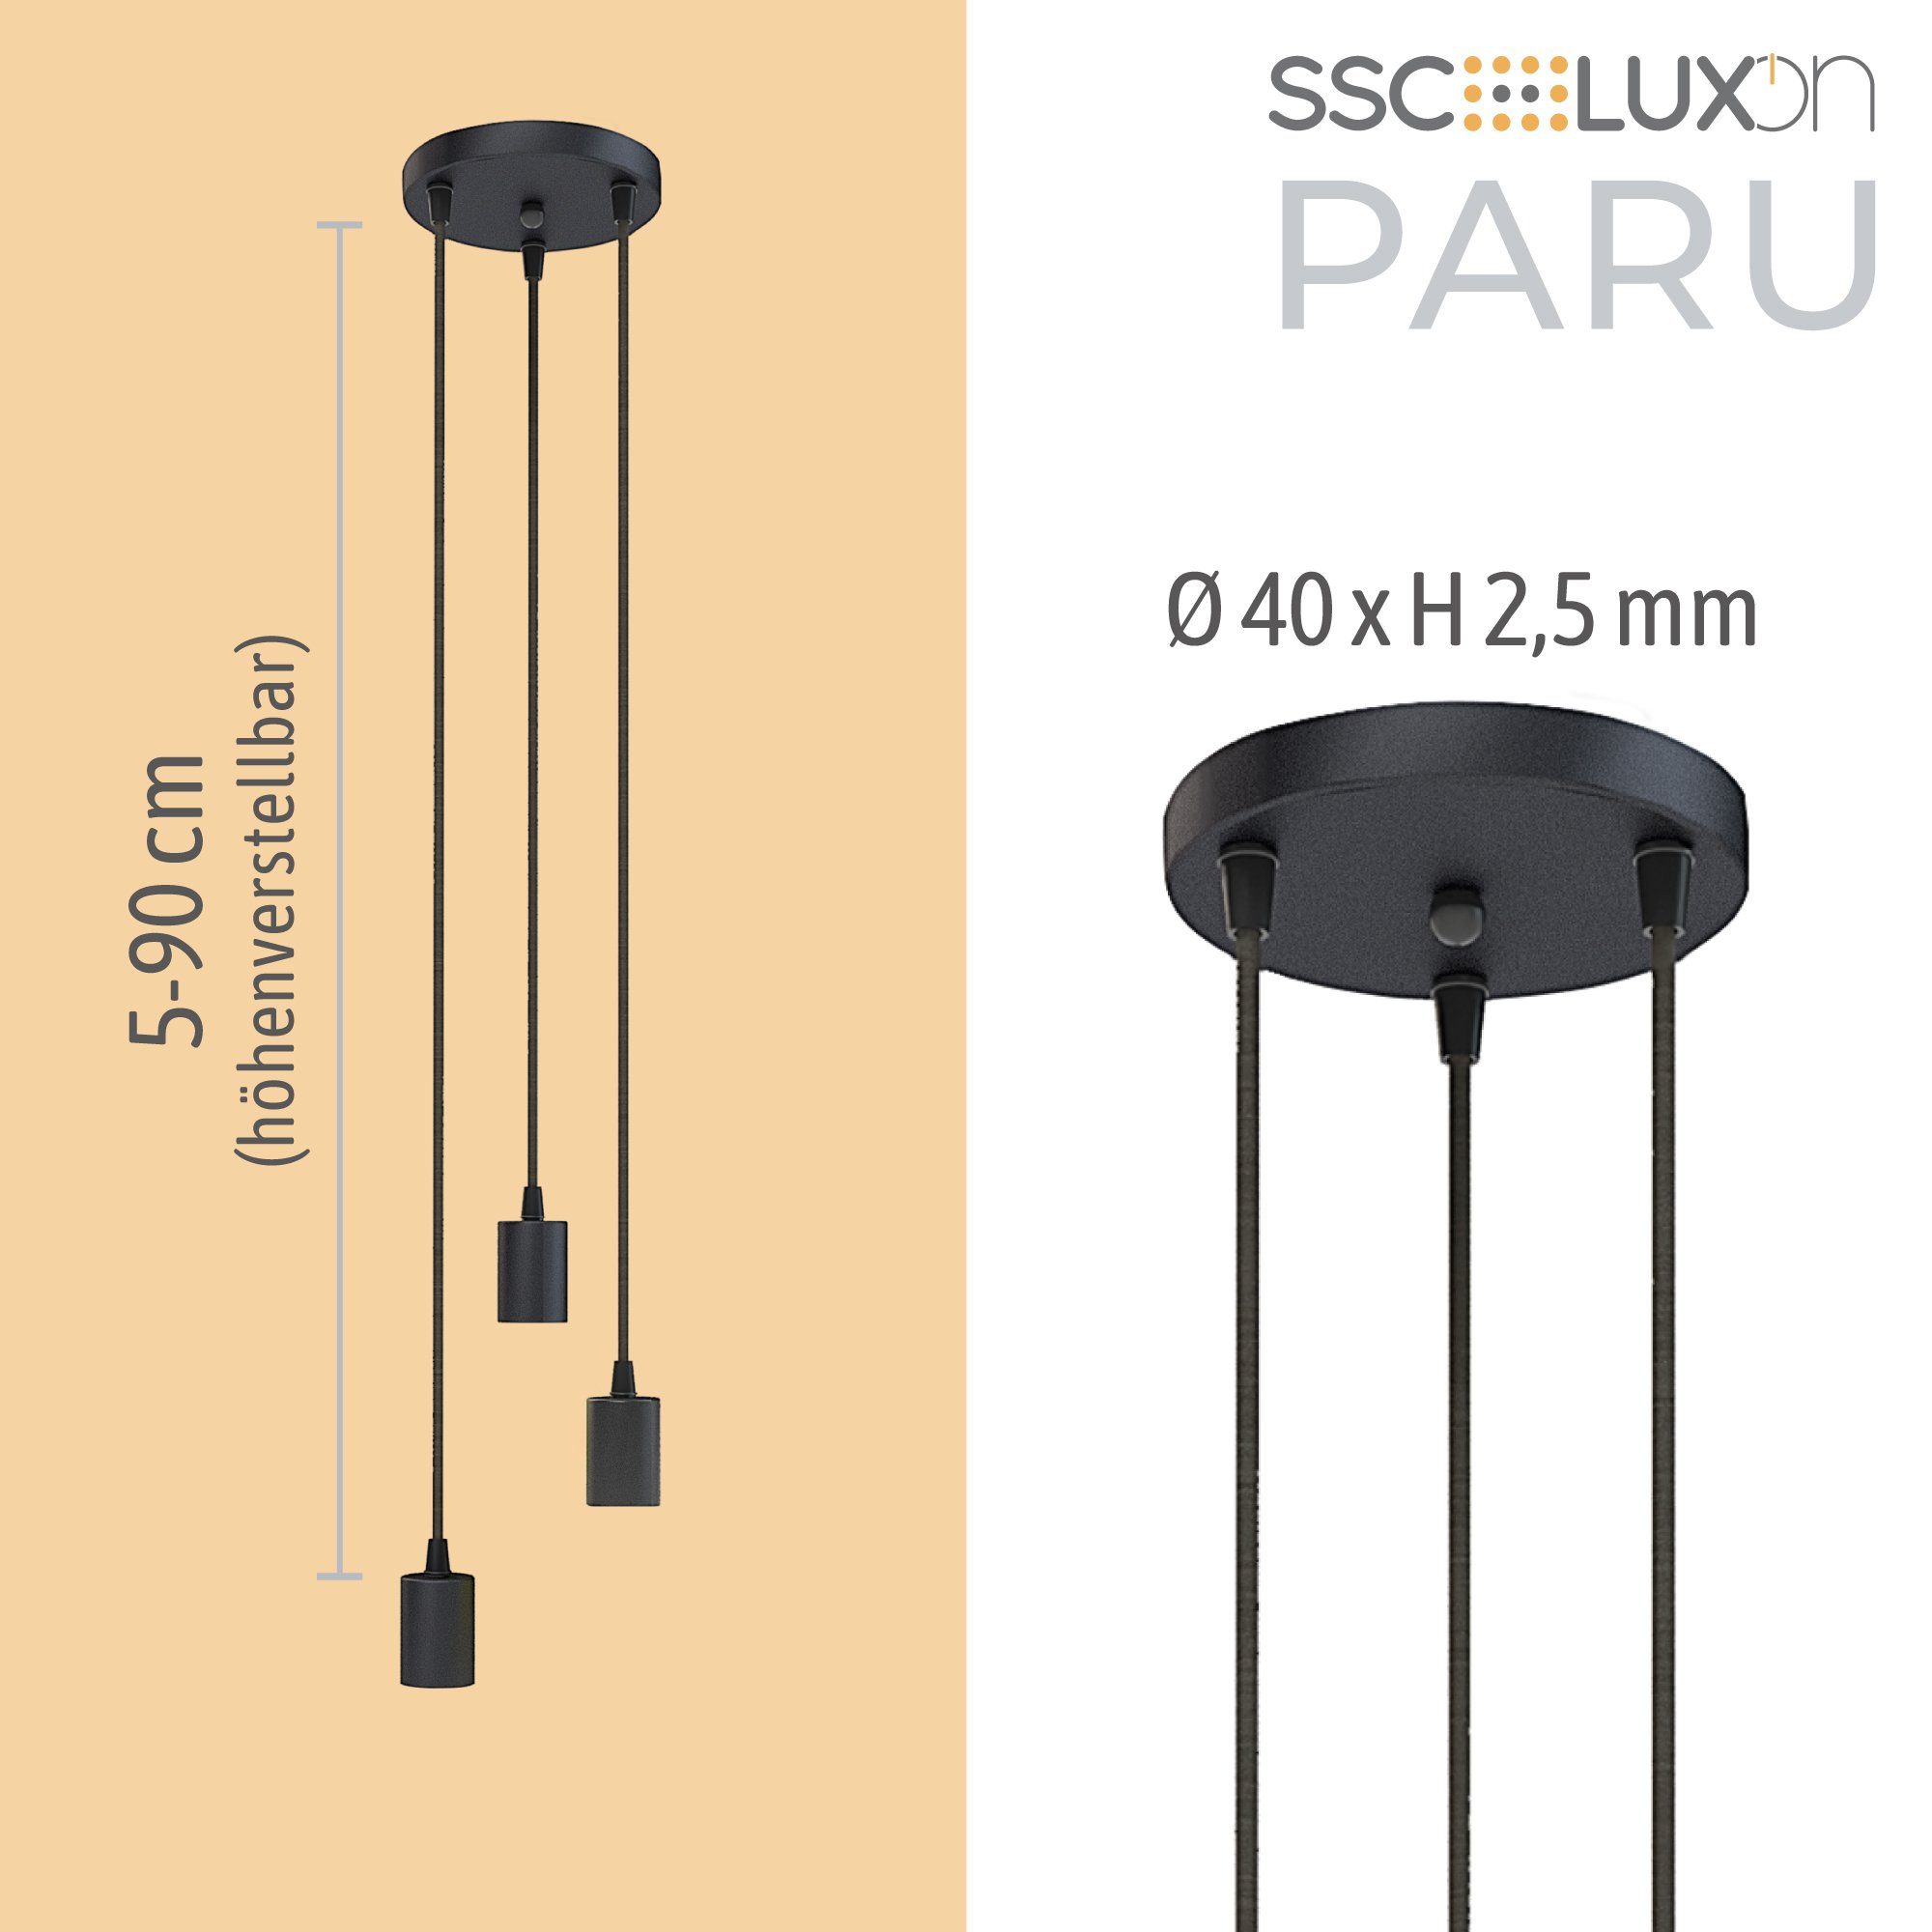 PARU für Lampen Textilkabel LED-Hängeleuchte mit E27 SSC-LUXon Hängelampe 3-flammig